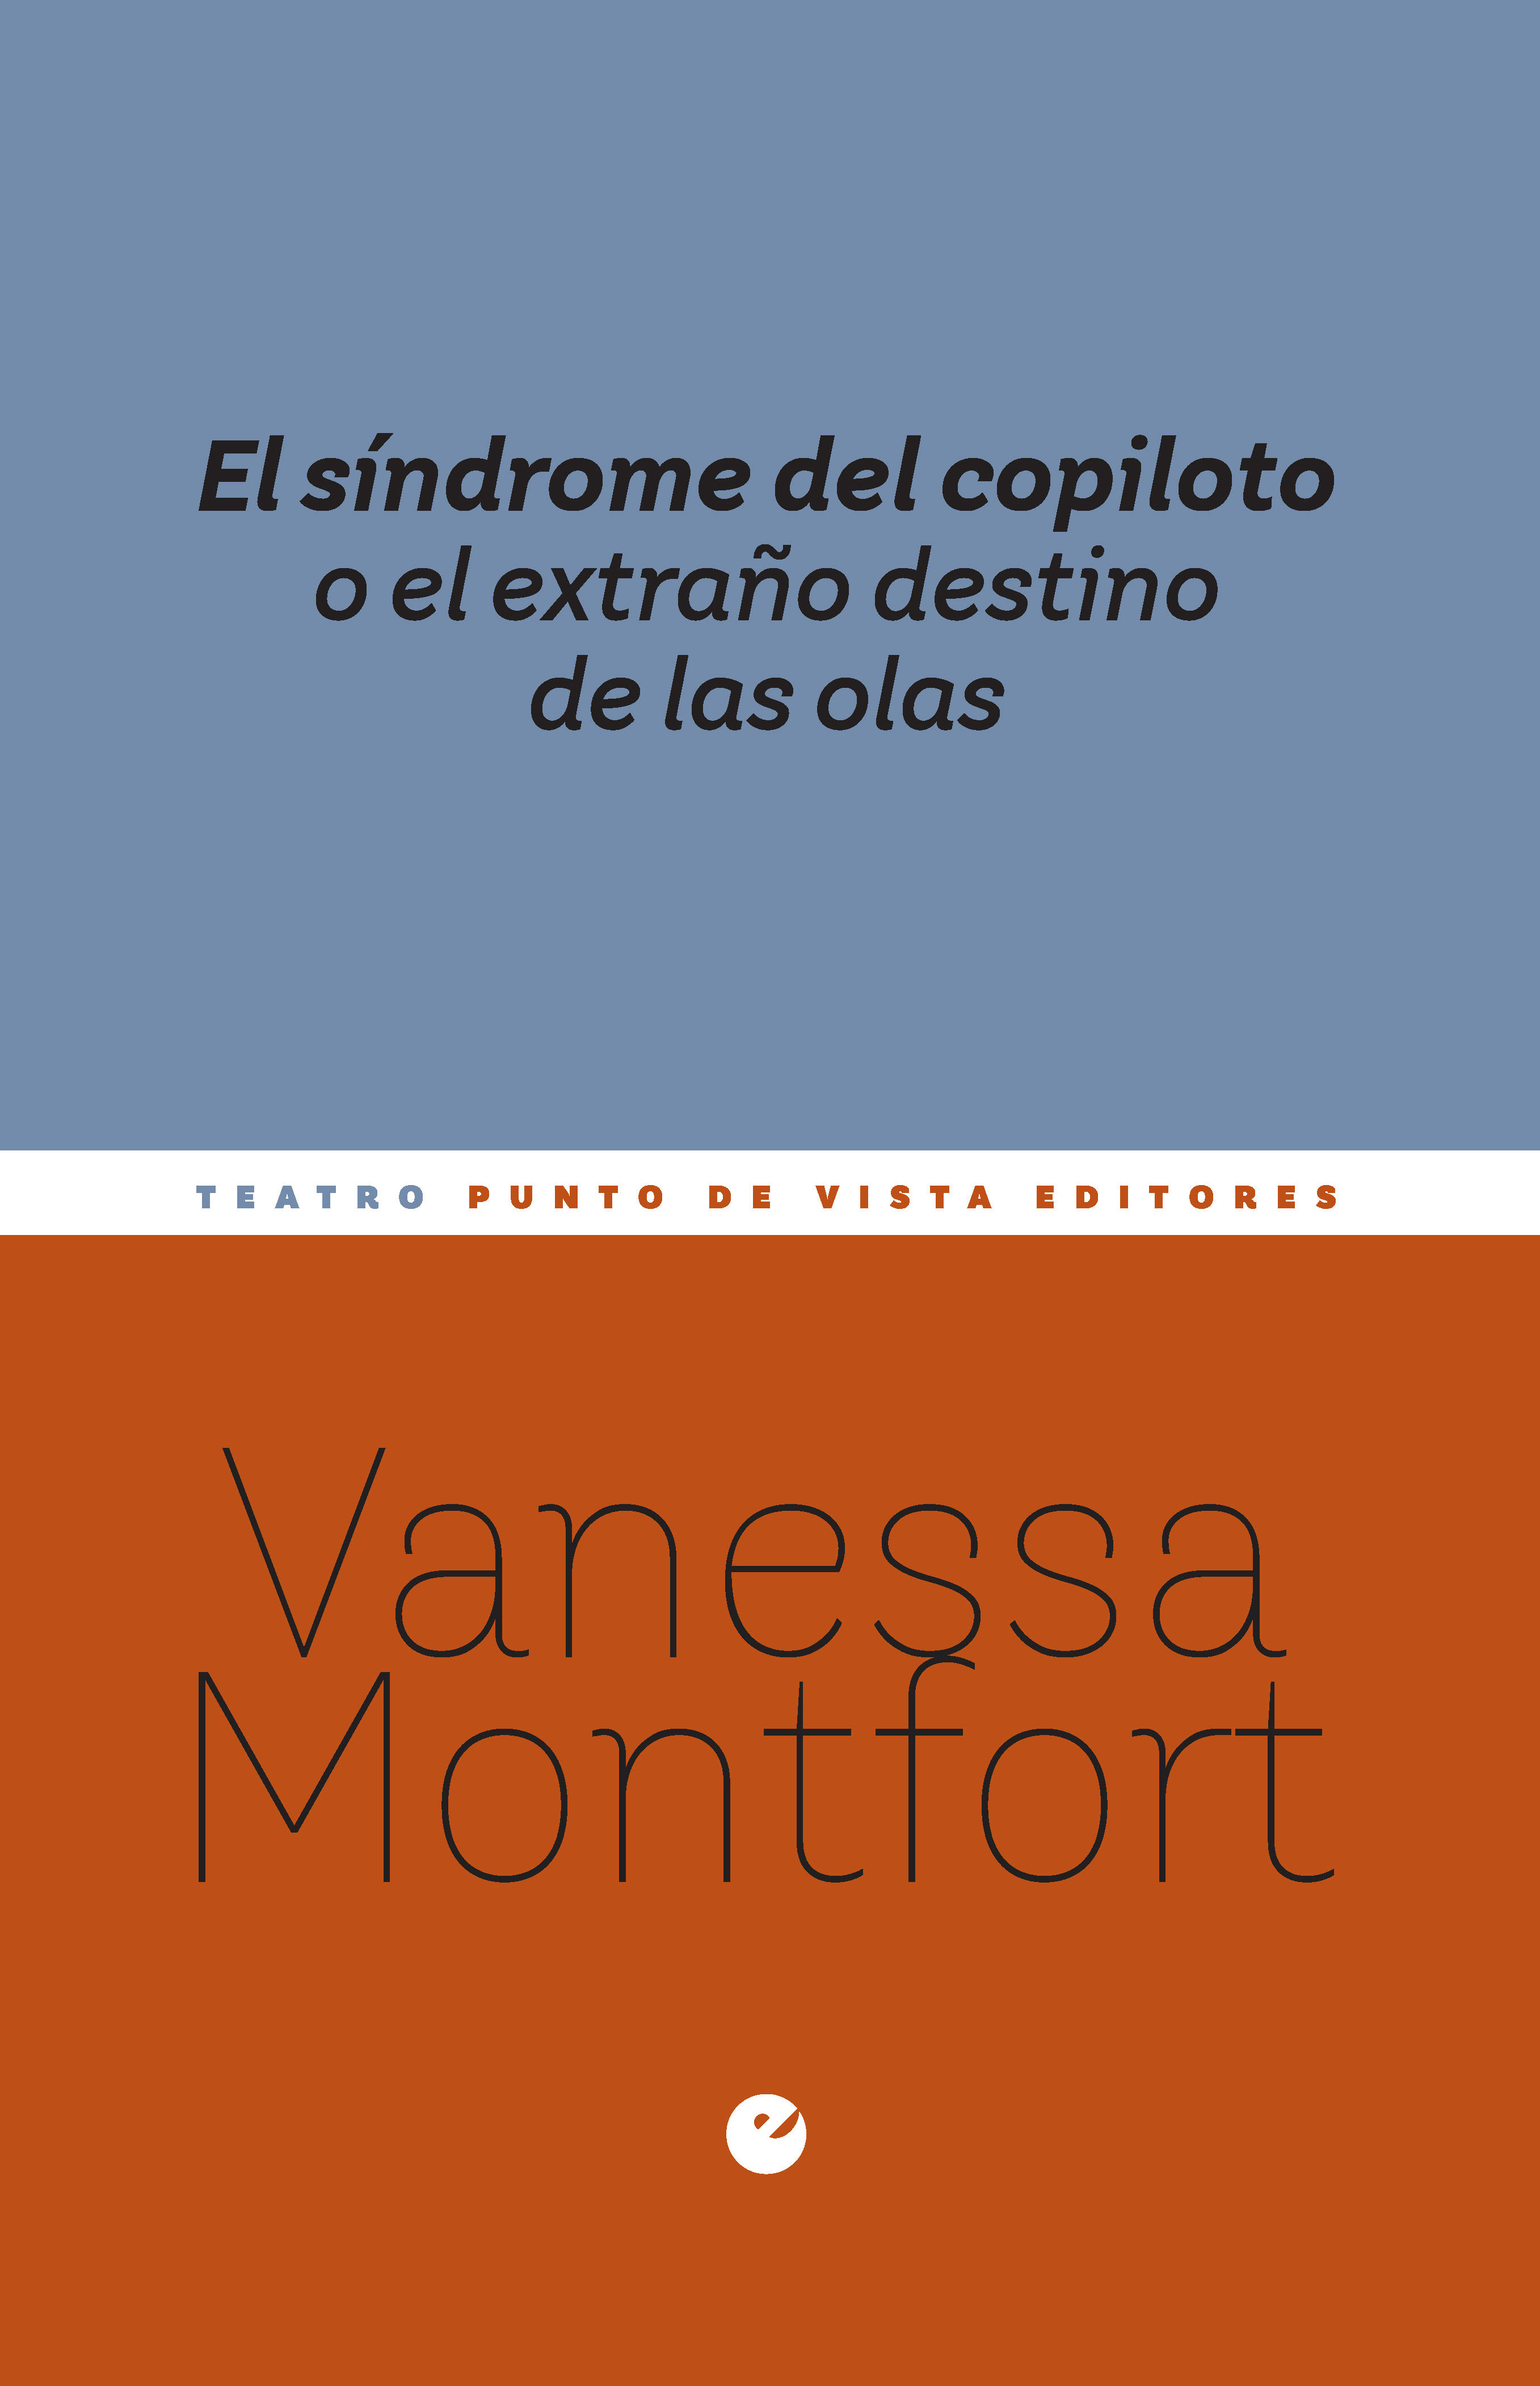 El síndrome del copiloto o, el extraño destino de las olas (Spanish language, 2022, Punto de Vista Editores)